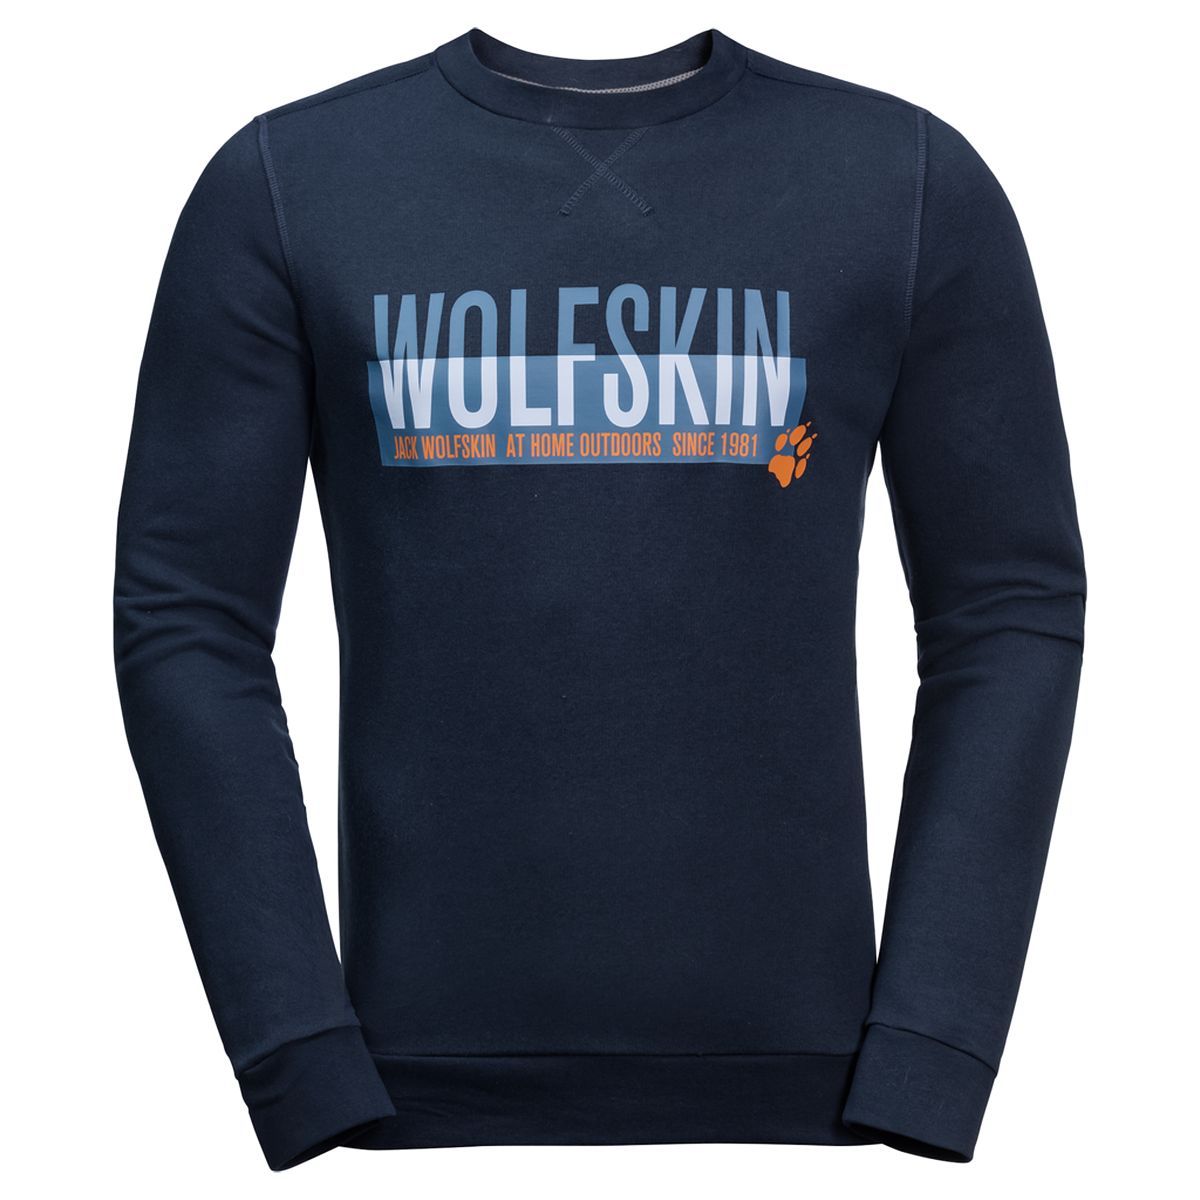   Jack Wolfskin Slogan Sweatshirt M, : -. 1707391-1010.  XXL (54)